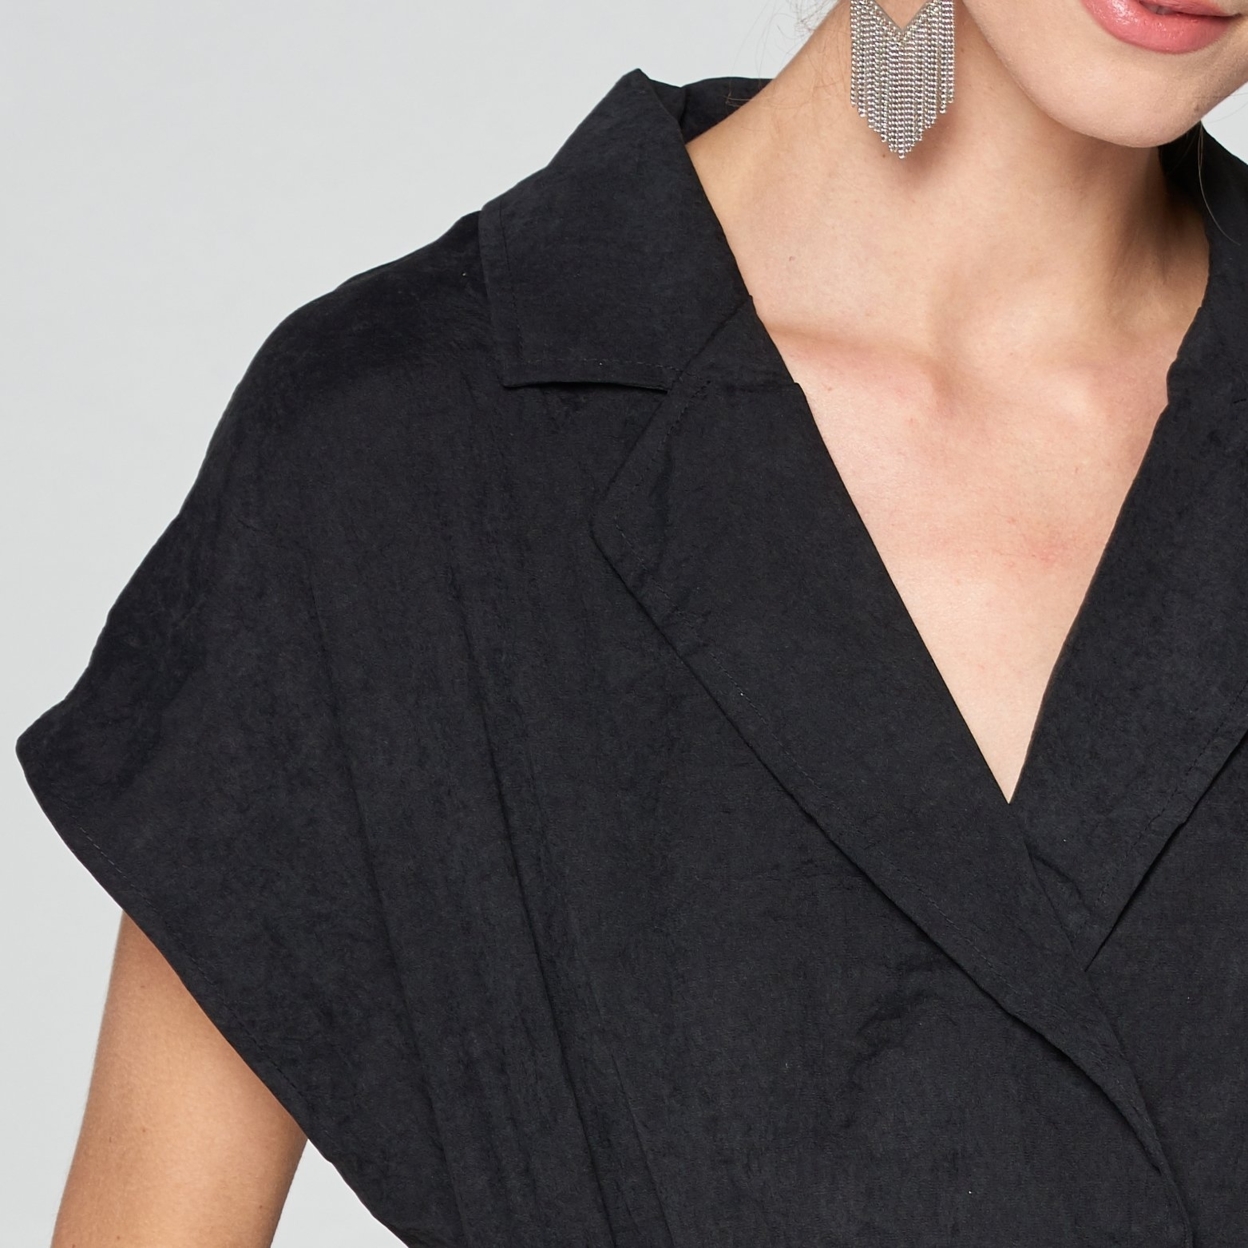 Kimono Cap Sleeve Jumpsuit - Black, Medium (8-10)